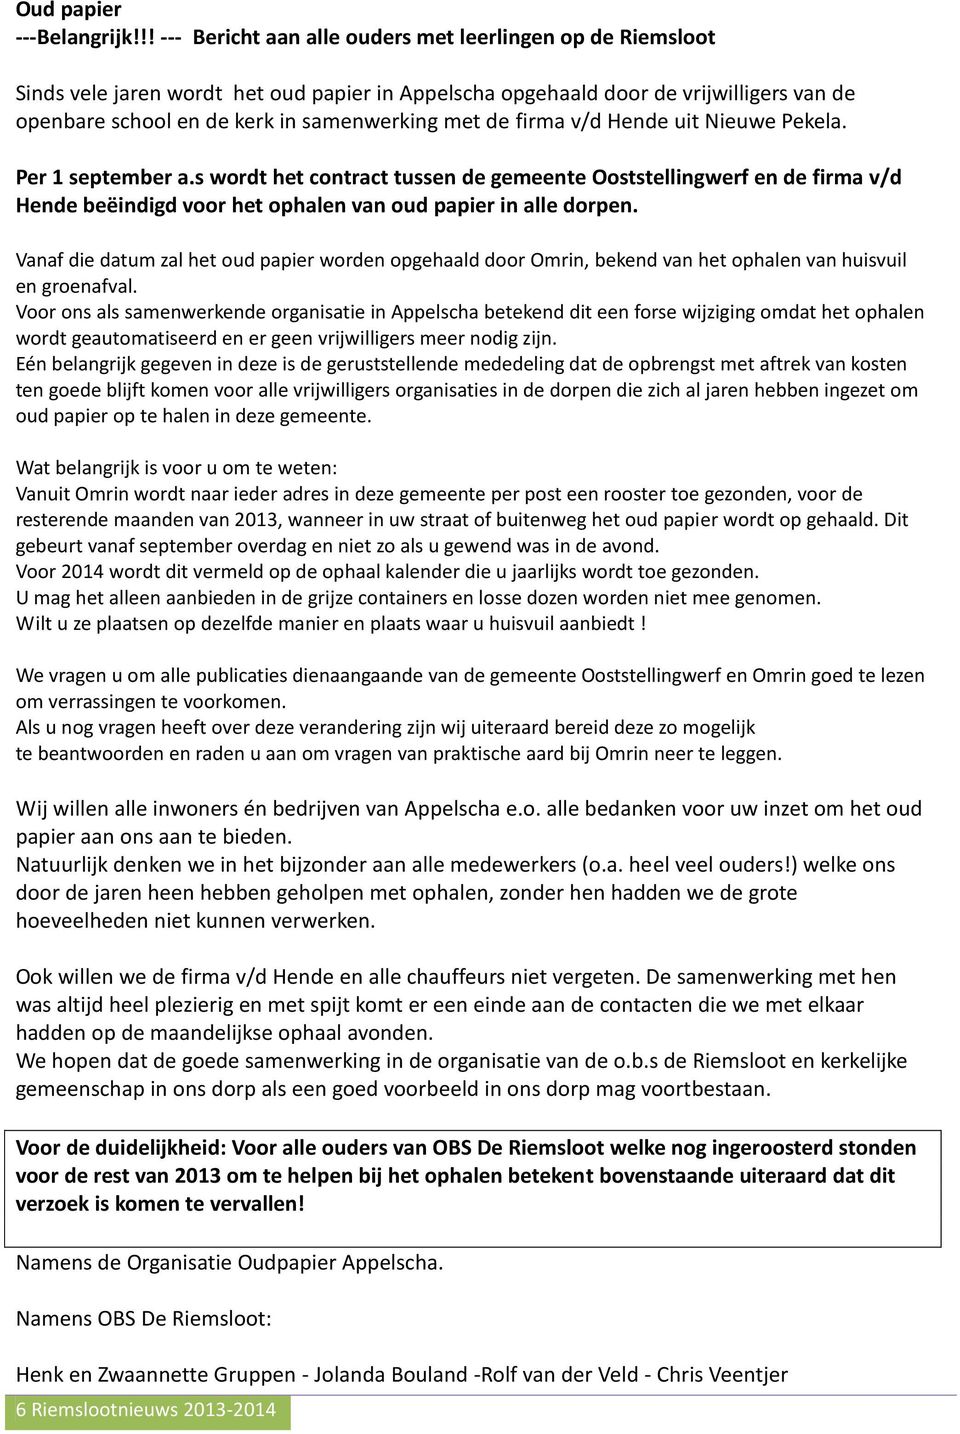 de firma v/d Hende uit Nieuwe Pekela. Per 1 september a.s wordt het contract tussen de gemeente Ooststellingwerf en de firma v/d Hende beëindigd voor het ophalen van oud papier in alle dorpen.